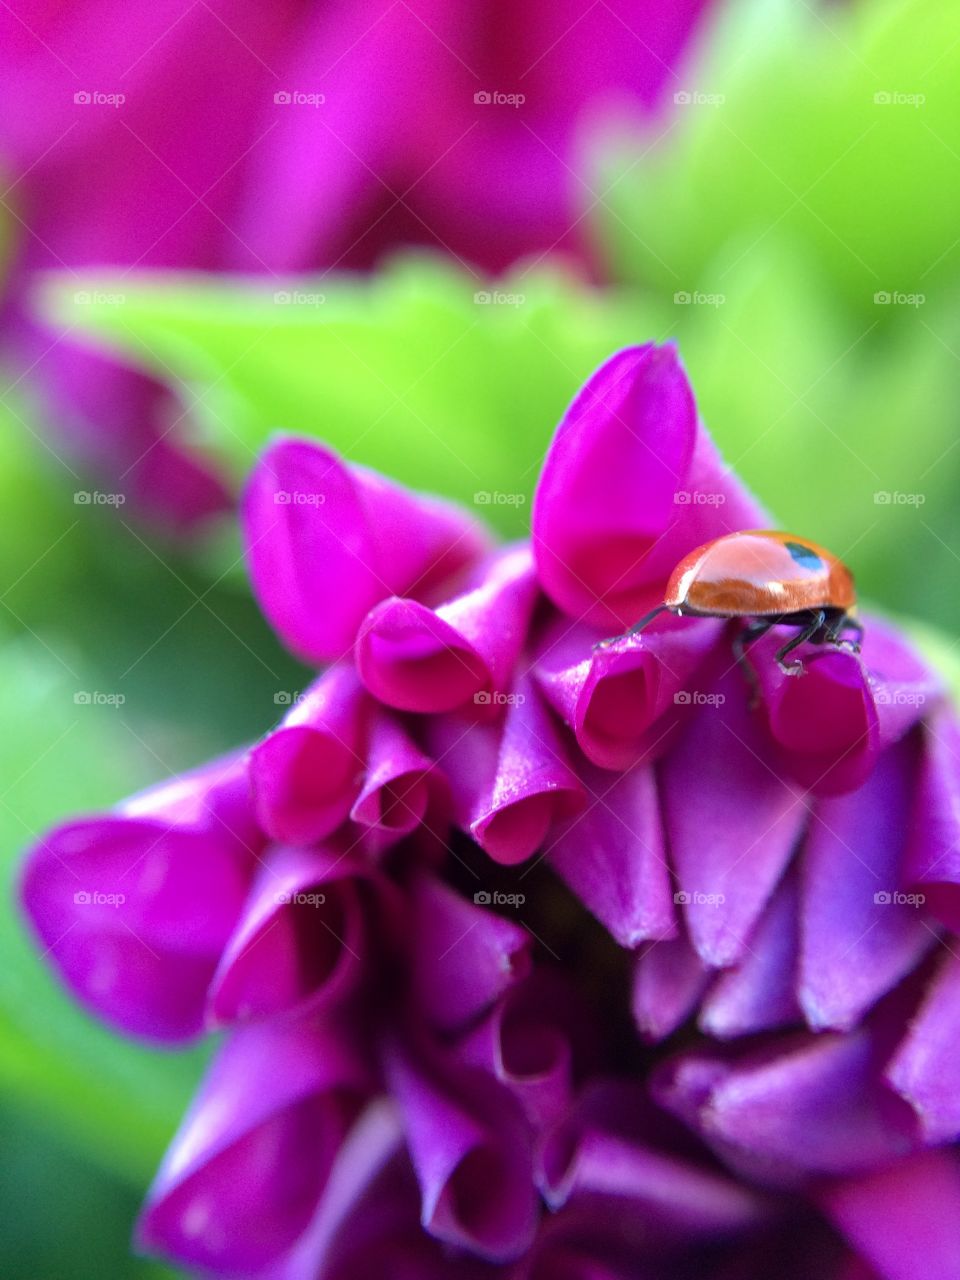 Lady bug on purple flower